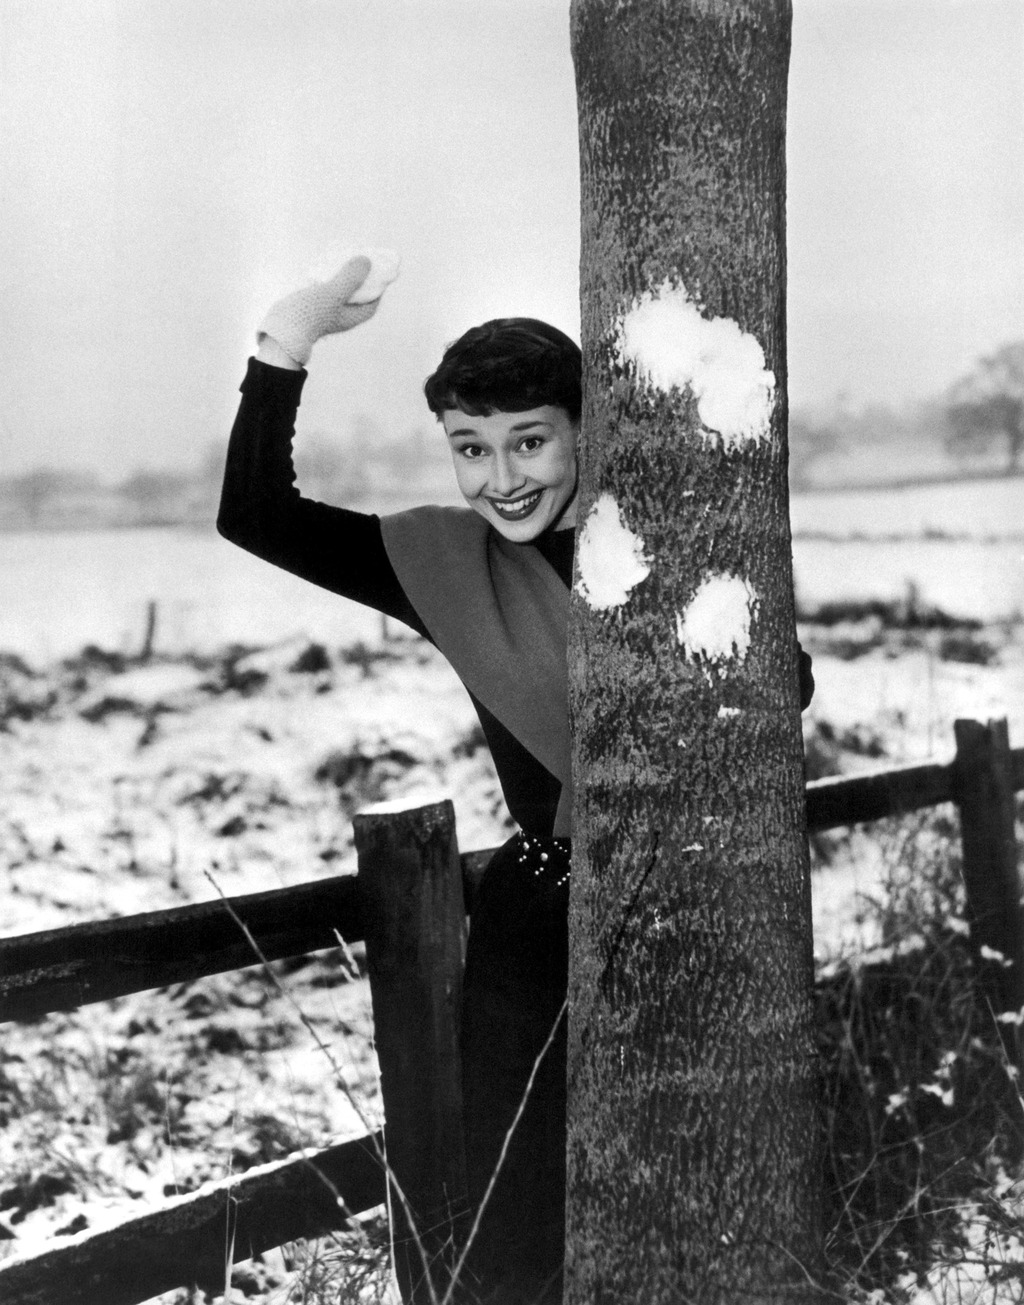 赫本搞怪照片,藏在大树后面扔雪球,太可爱了!